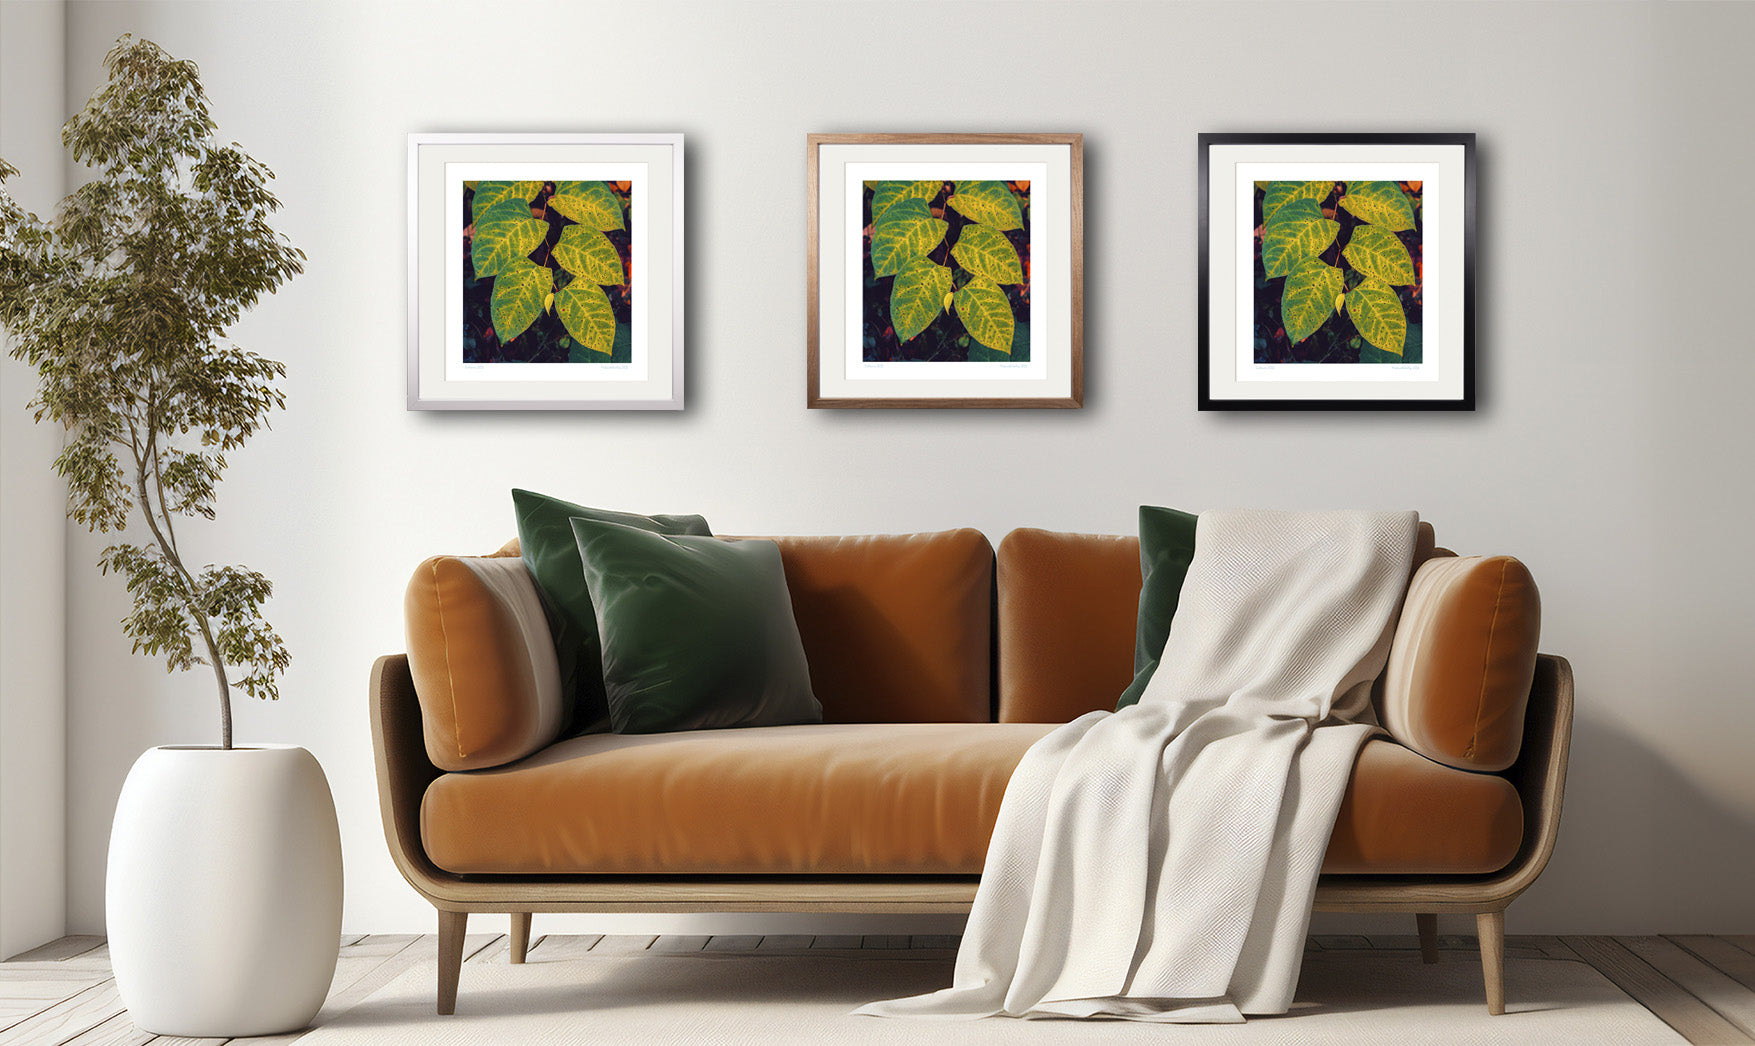 Der Kunstdruck "Six Leaves" hängt in drei verschiedenen Rahmungen über einem stilvollen Sofa